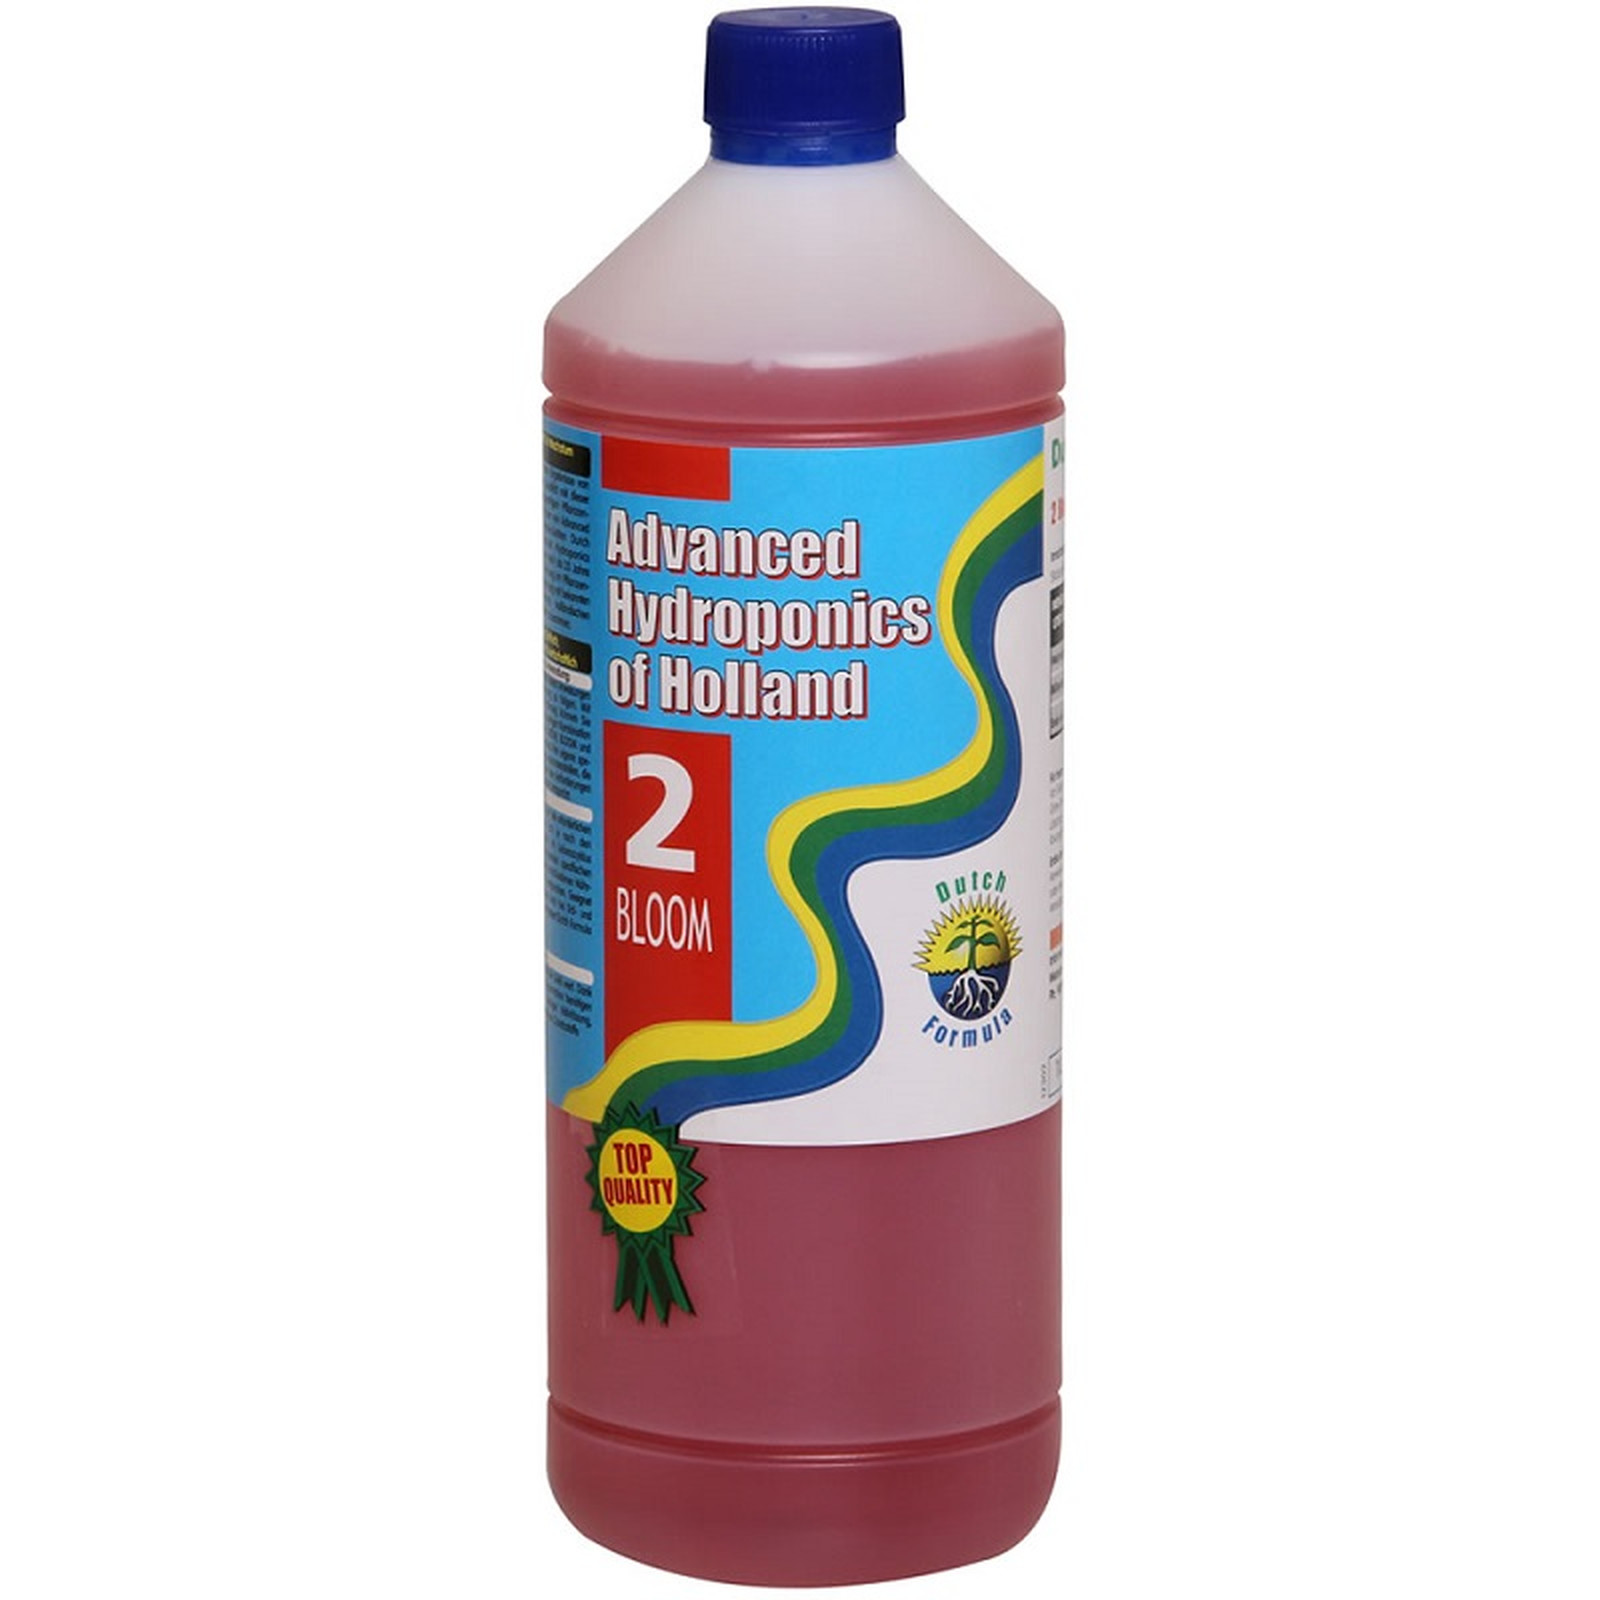 Advanced Hydroponics - Dutch Formula Bloom - 1 liter